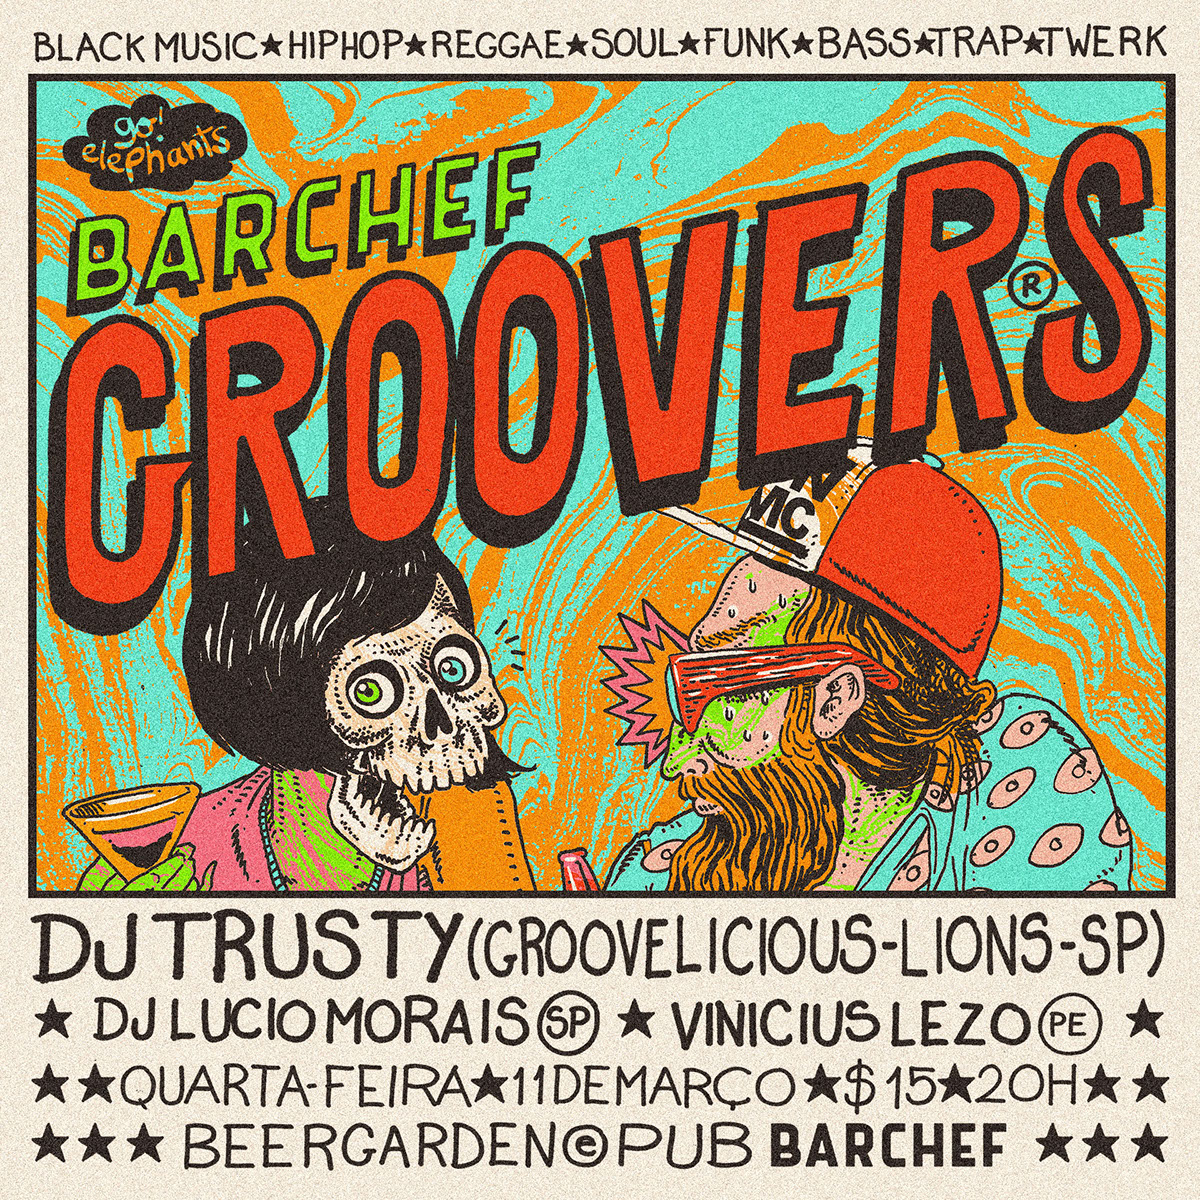 BARCHEF GROOVERS® Come back TWERK! twerk dafpunk barchef groovers art design artists on behance Caramurú baumgartner poster draw Brazil